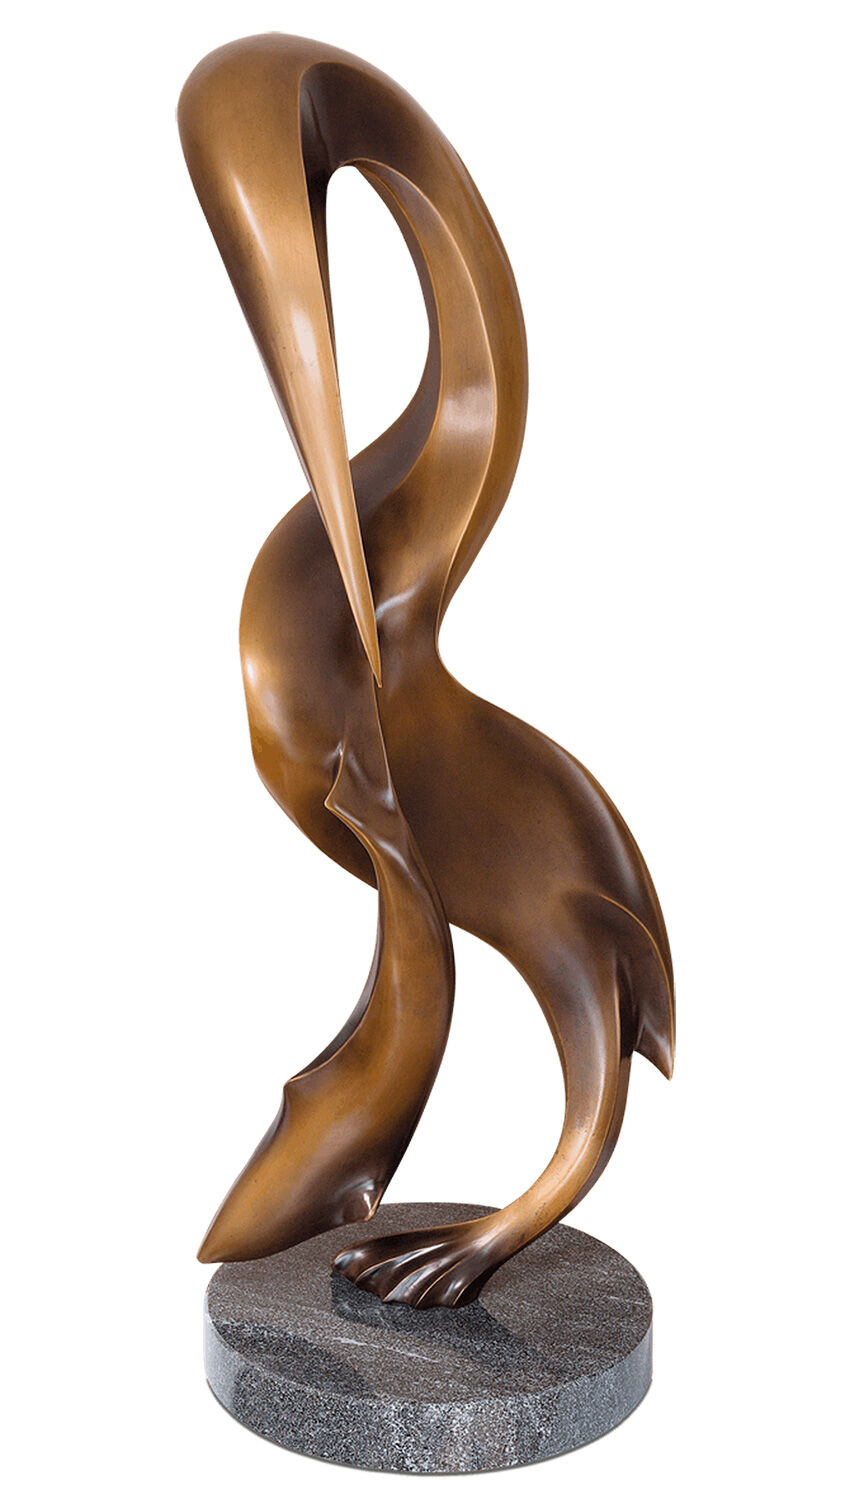 Skulptur "Pelican" (2013), bronze von Robert Simon